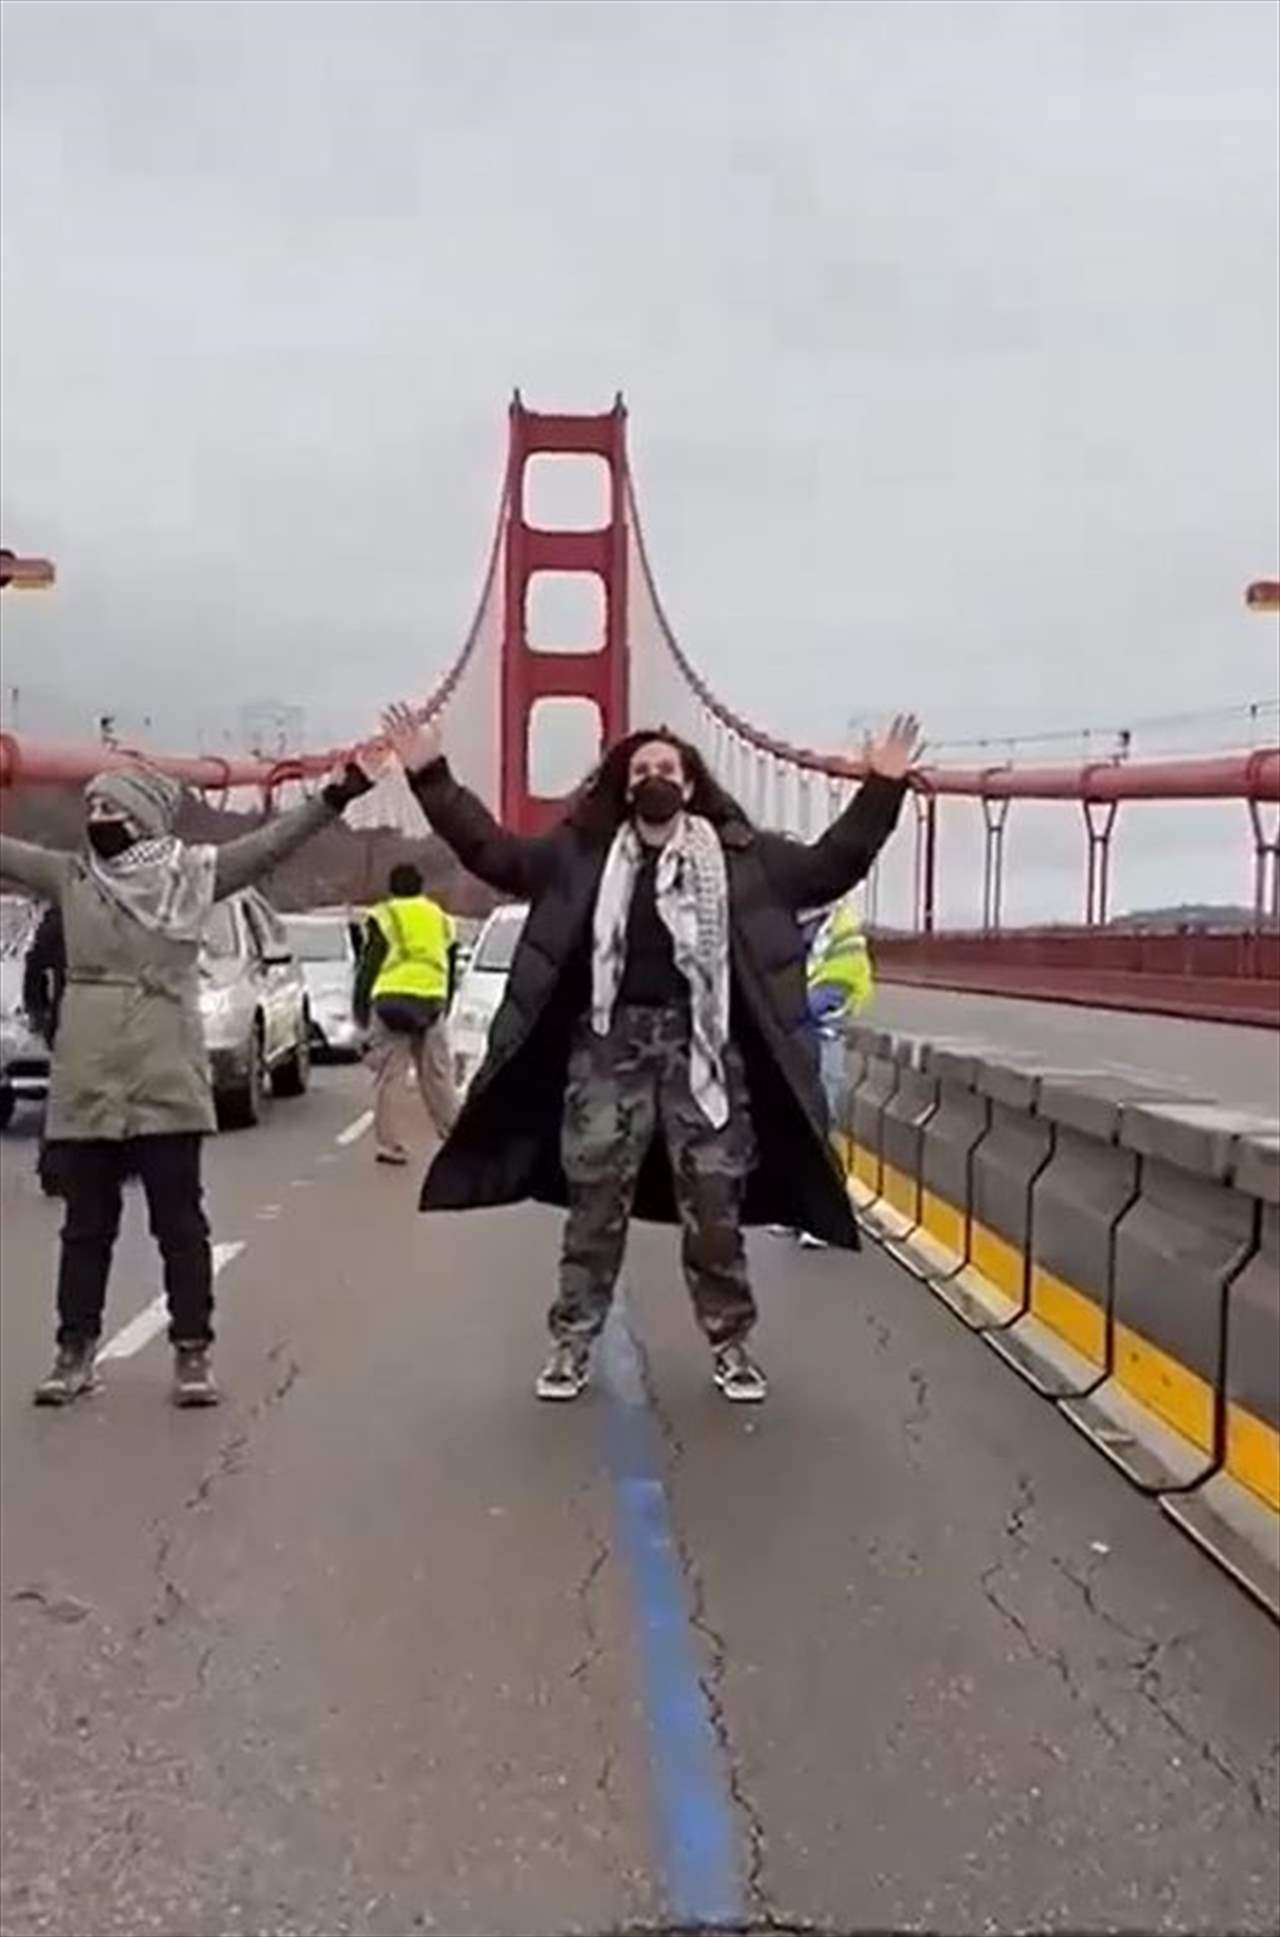 شاهد - أميركا... ناشطون يغلقون جسر غولدين جيت في سان فرانسيسكو للمطالبة بحماية مدينة رفح دولياً